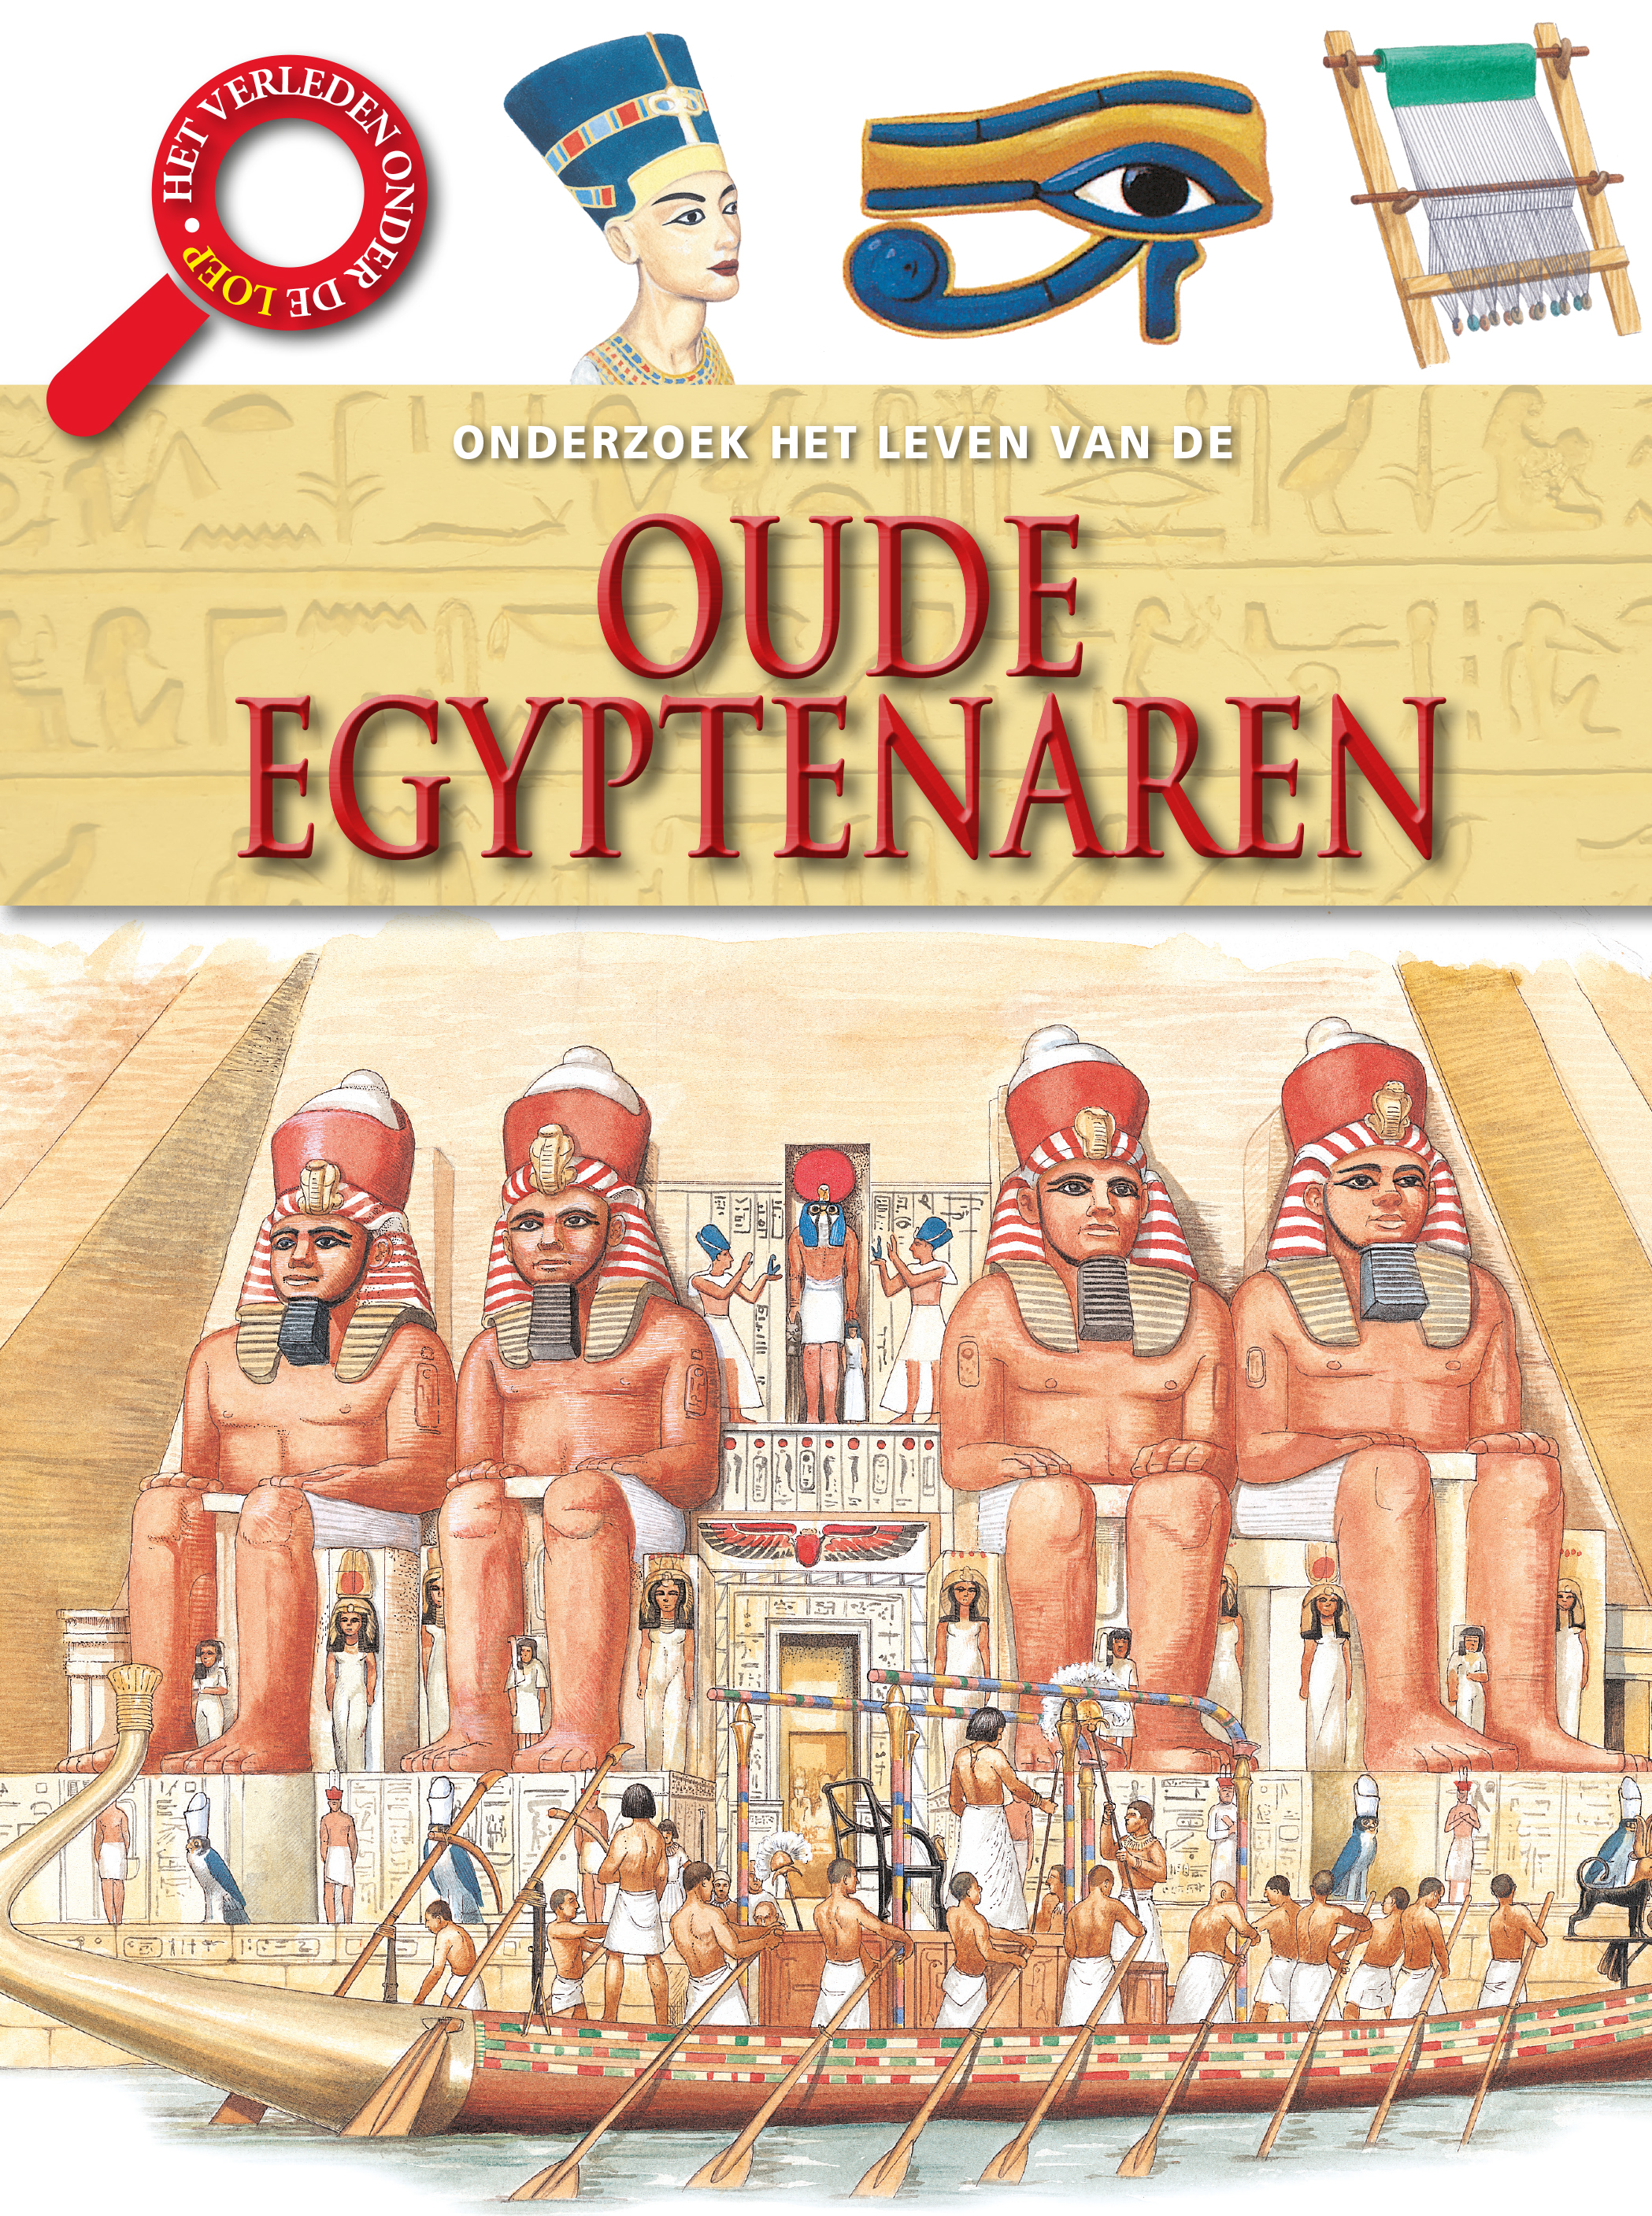 CNBSPO006 de oude Egyptenaren, Onderzoek het leven van